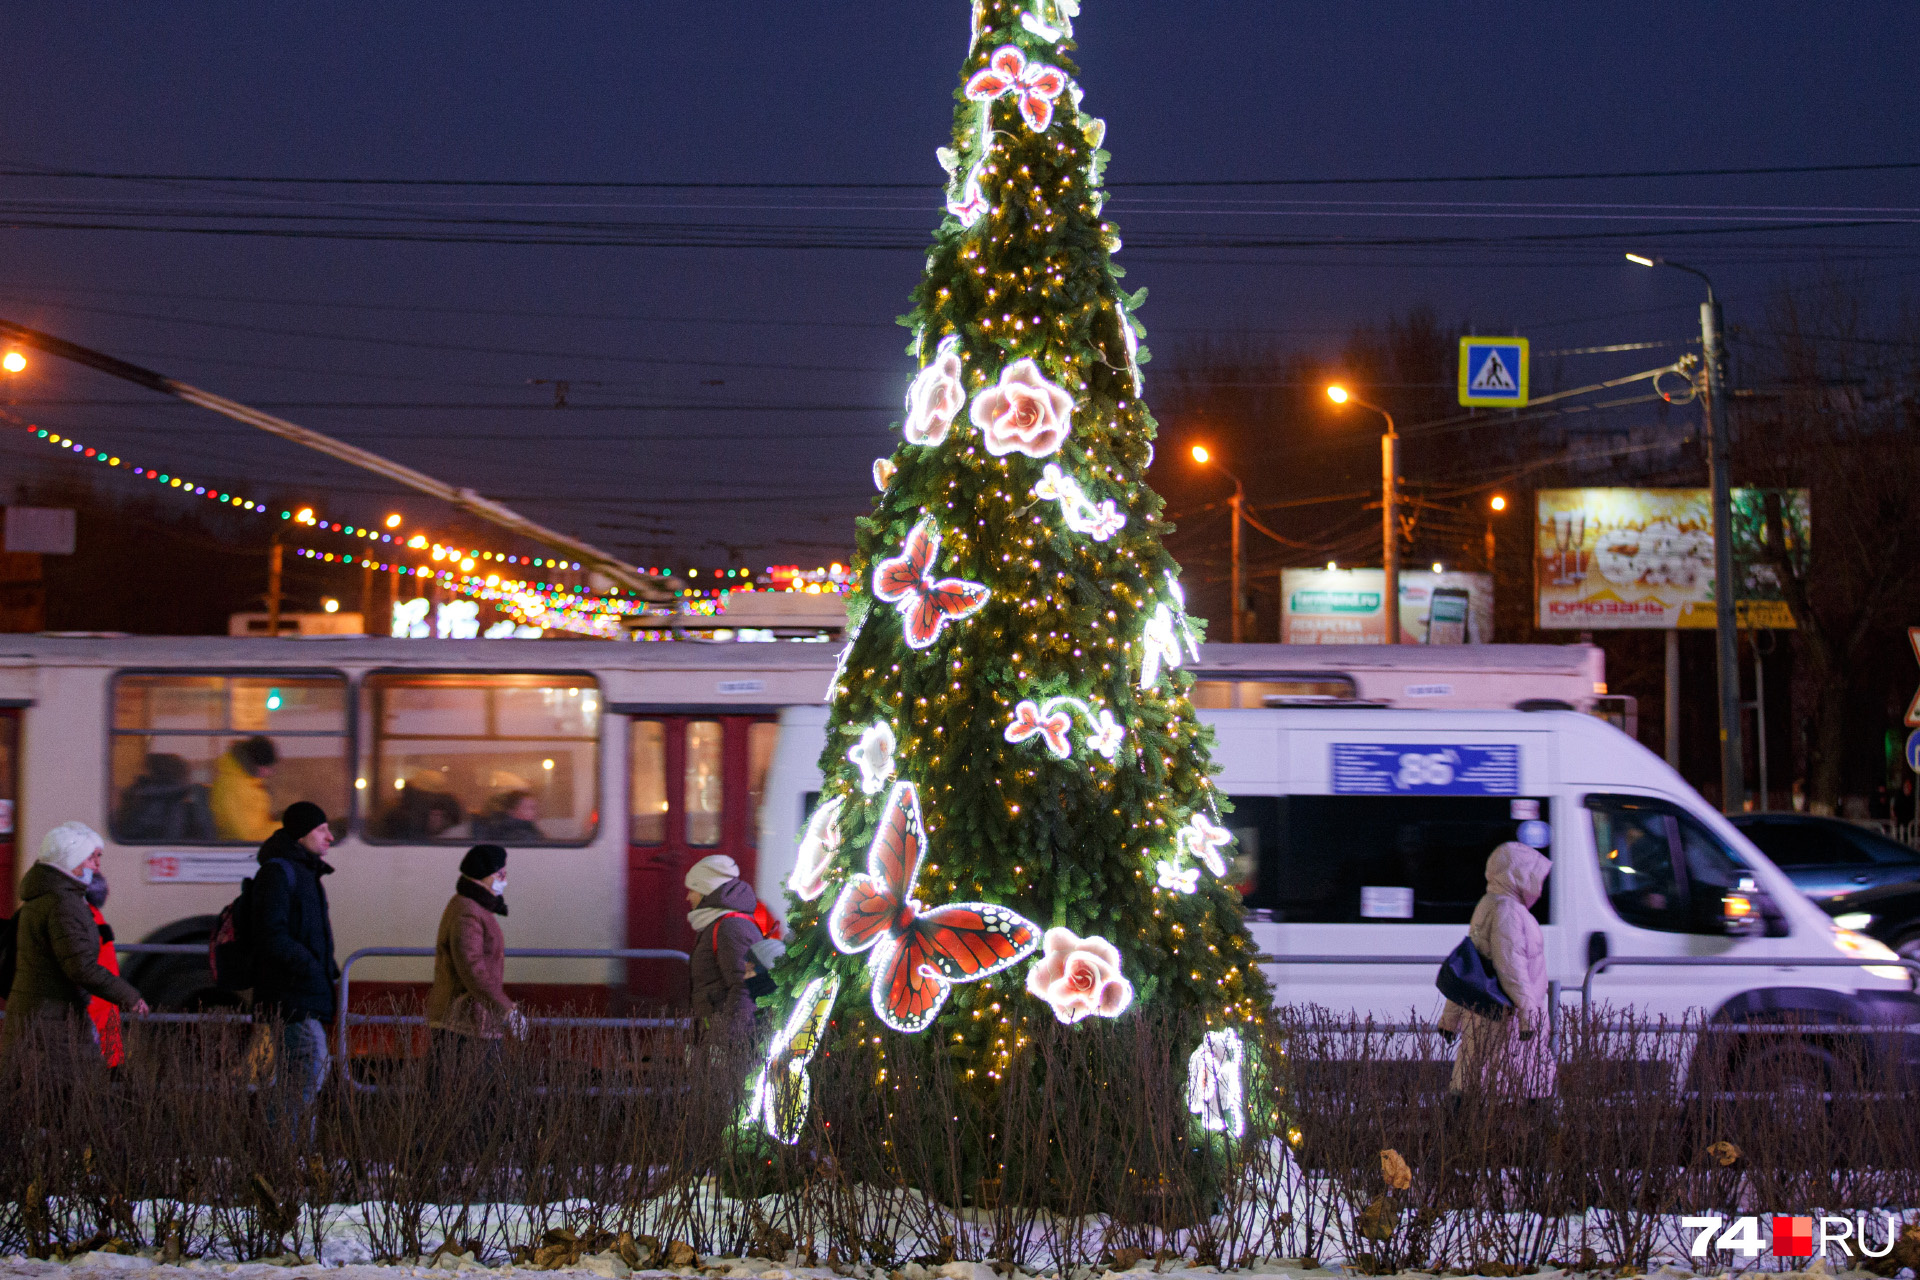 31 декабря 2011. Новогодняя ночь. Новогодняя ночь в Челябинске. Новогодний вид. Новогодняя ночь в городе.